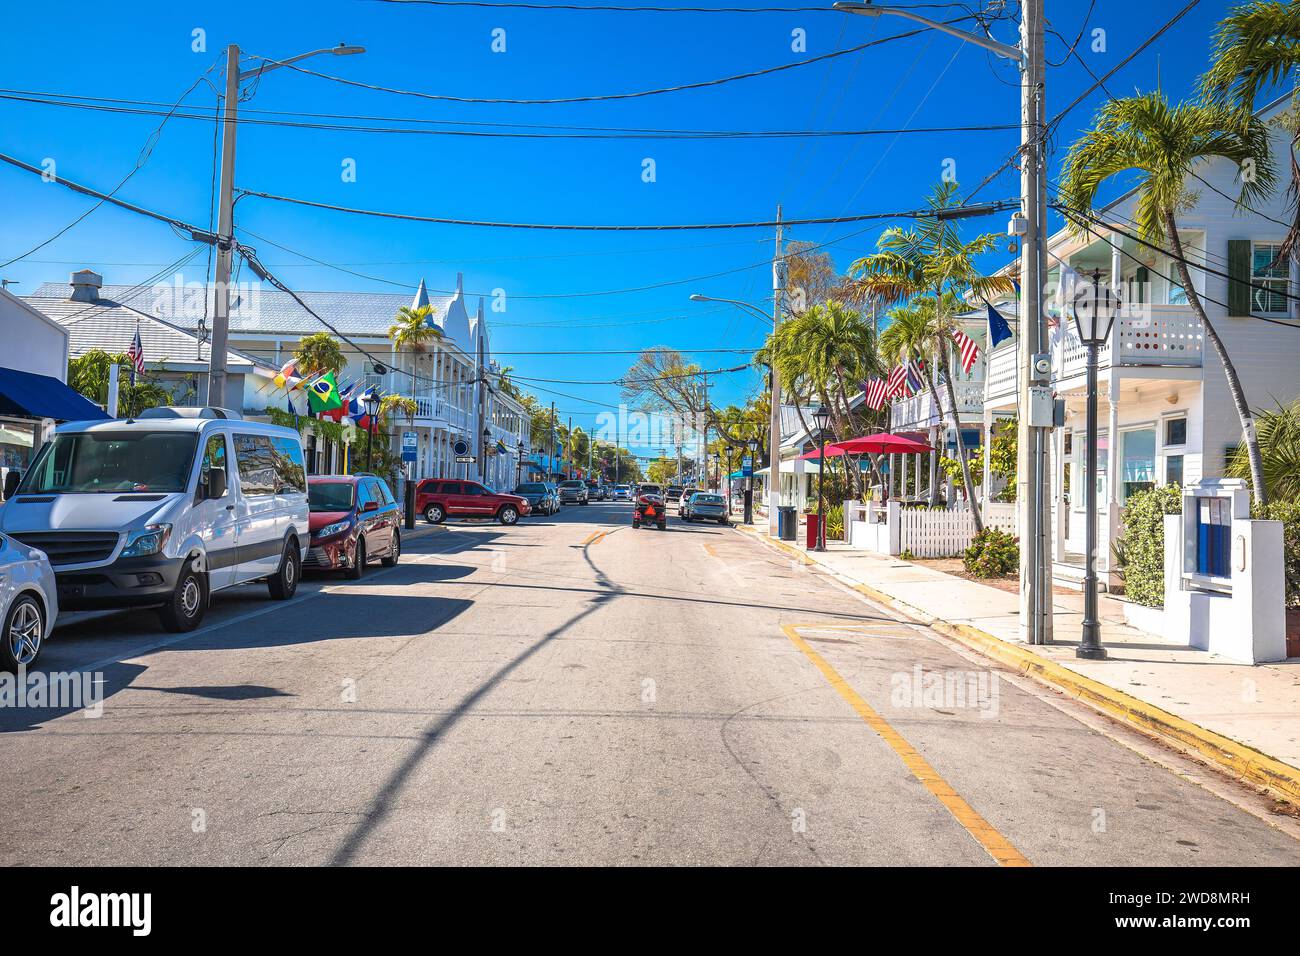 Key West vue panoramique de la rue Duval, sud de la Floride Keys, États-Unis d'Amérique Banque D'Images